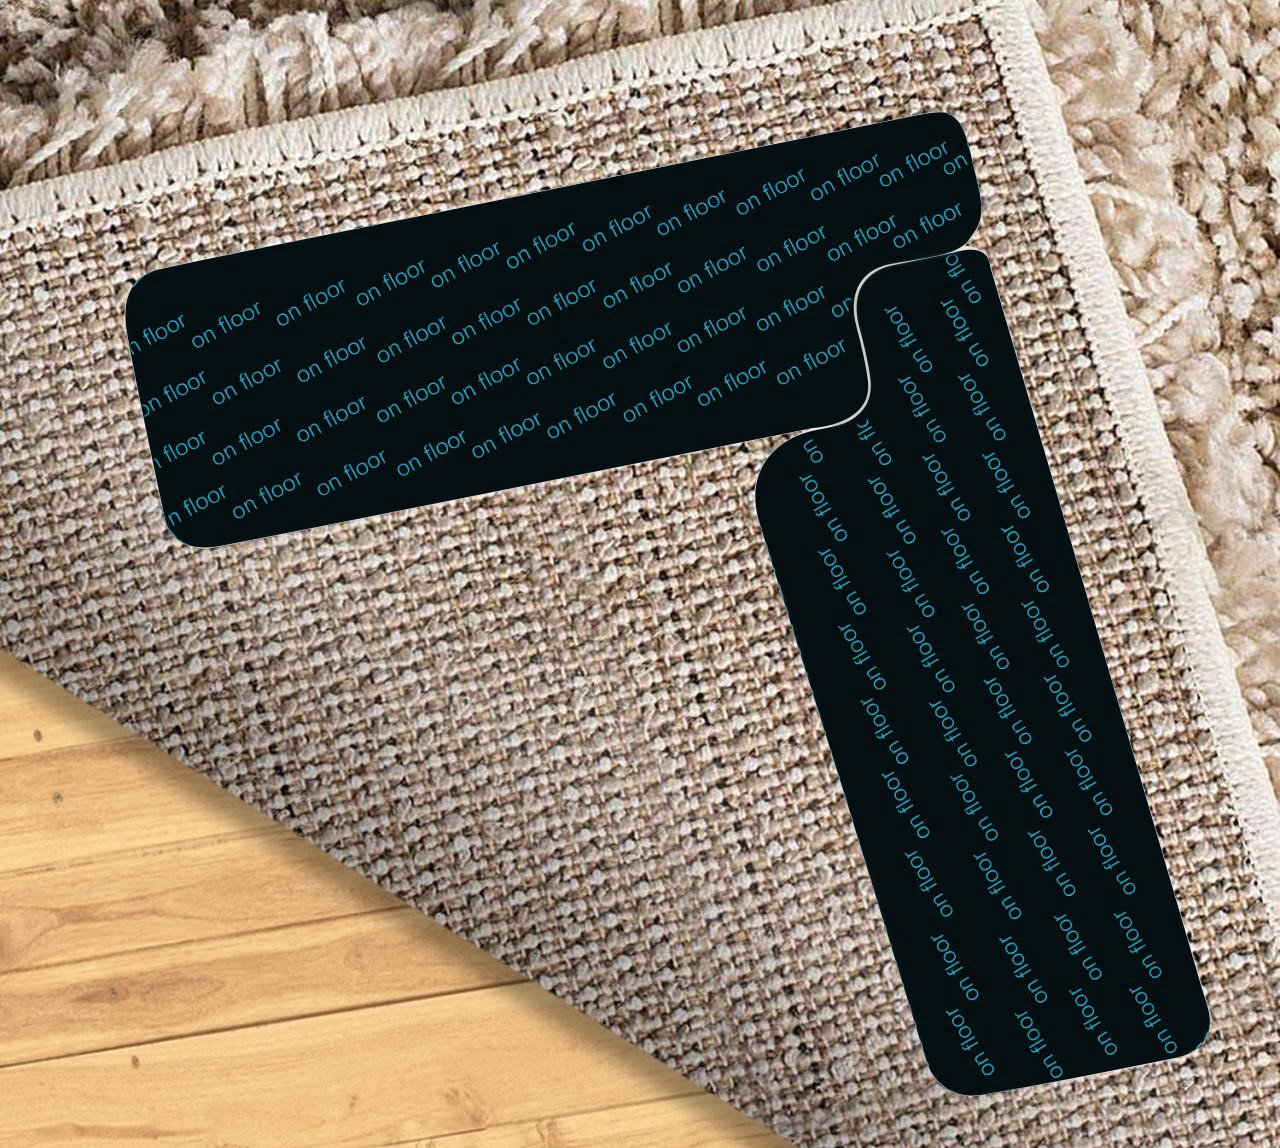 8 PC Anti Slip Rug Gripper Set Carpet Grip Mat Non Skid Tape Adhesive Floor Pad, Black